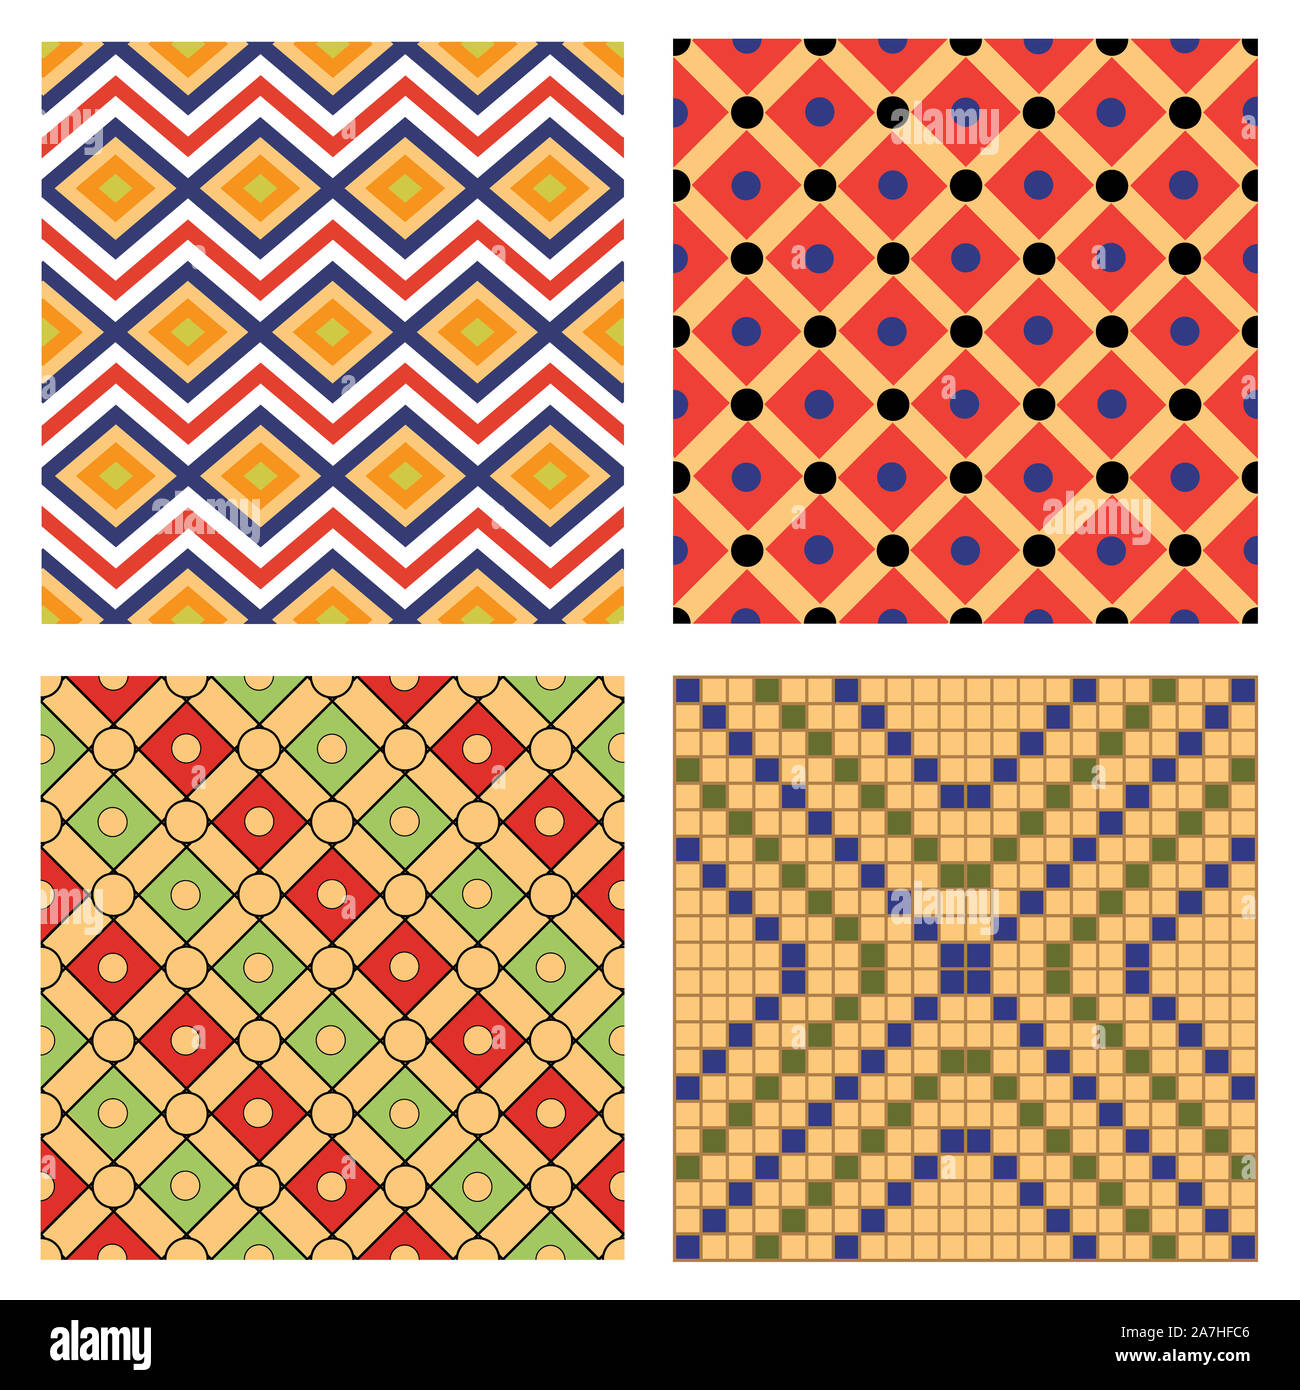 Ägypten nationalen Ornament pattern Volume 3. Ägyptische dekorative textile Elemente Hintergrund. Die afrikanische Kultur Stoff Design. Stockfoto